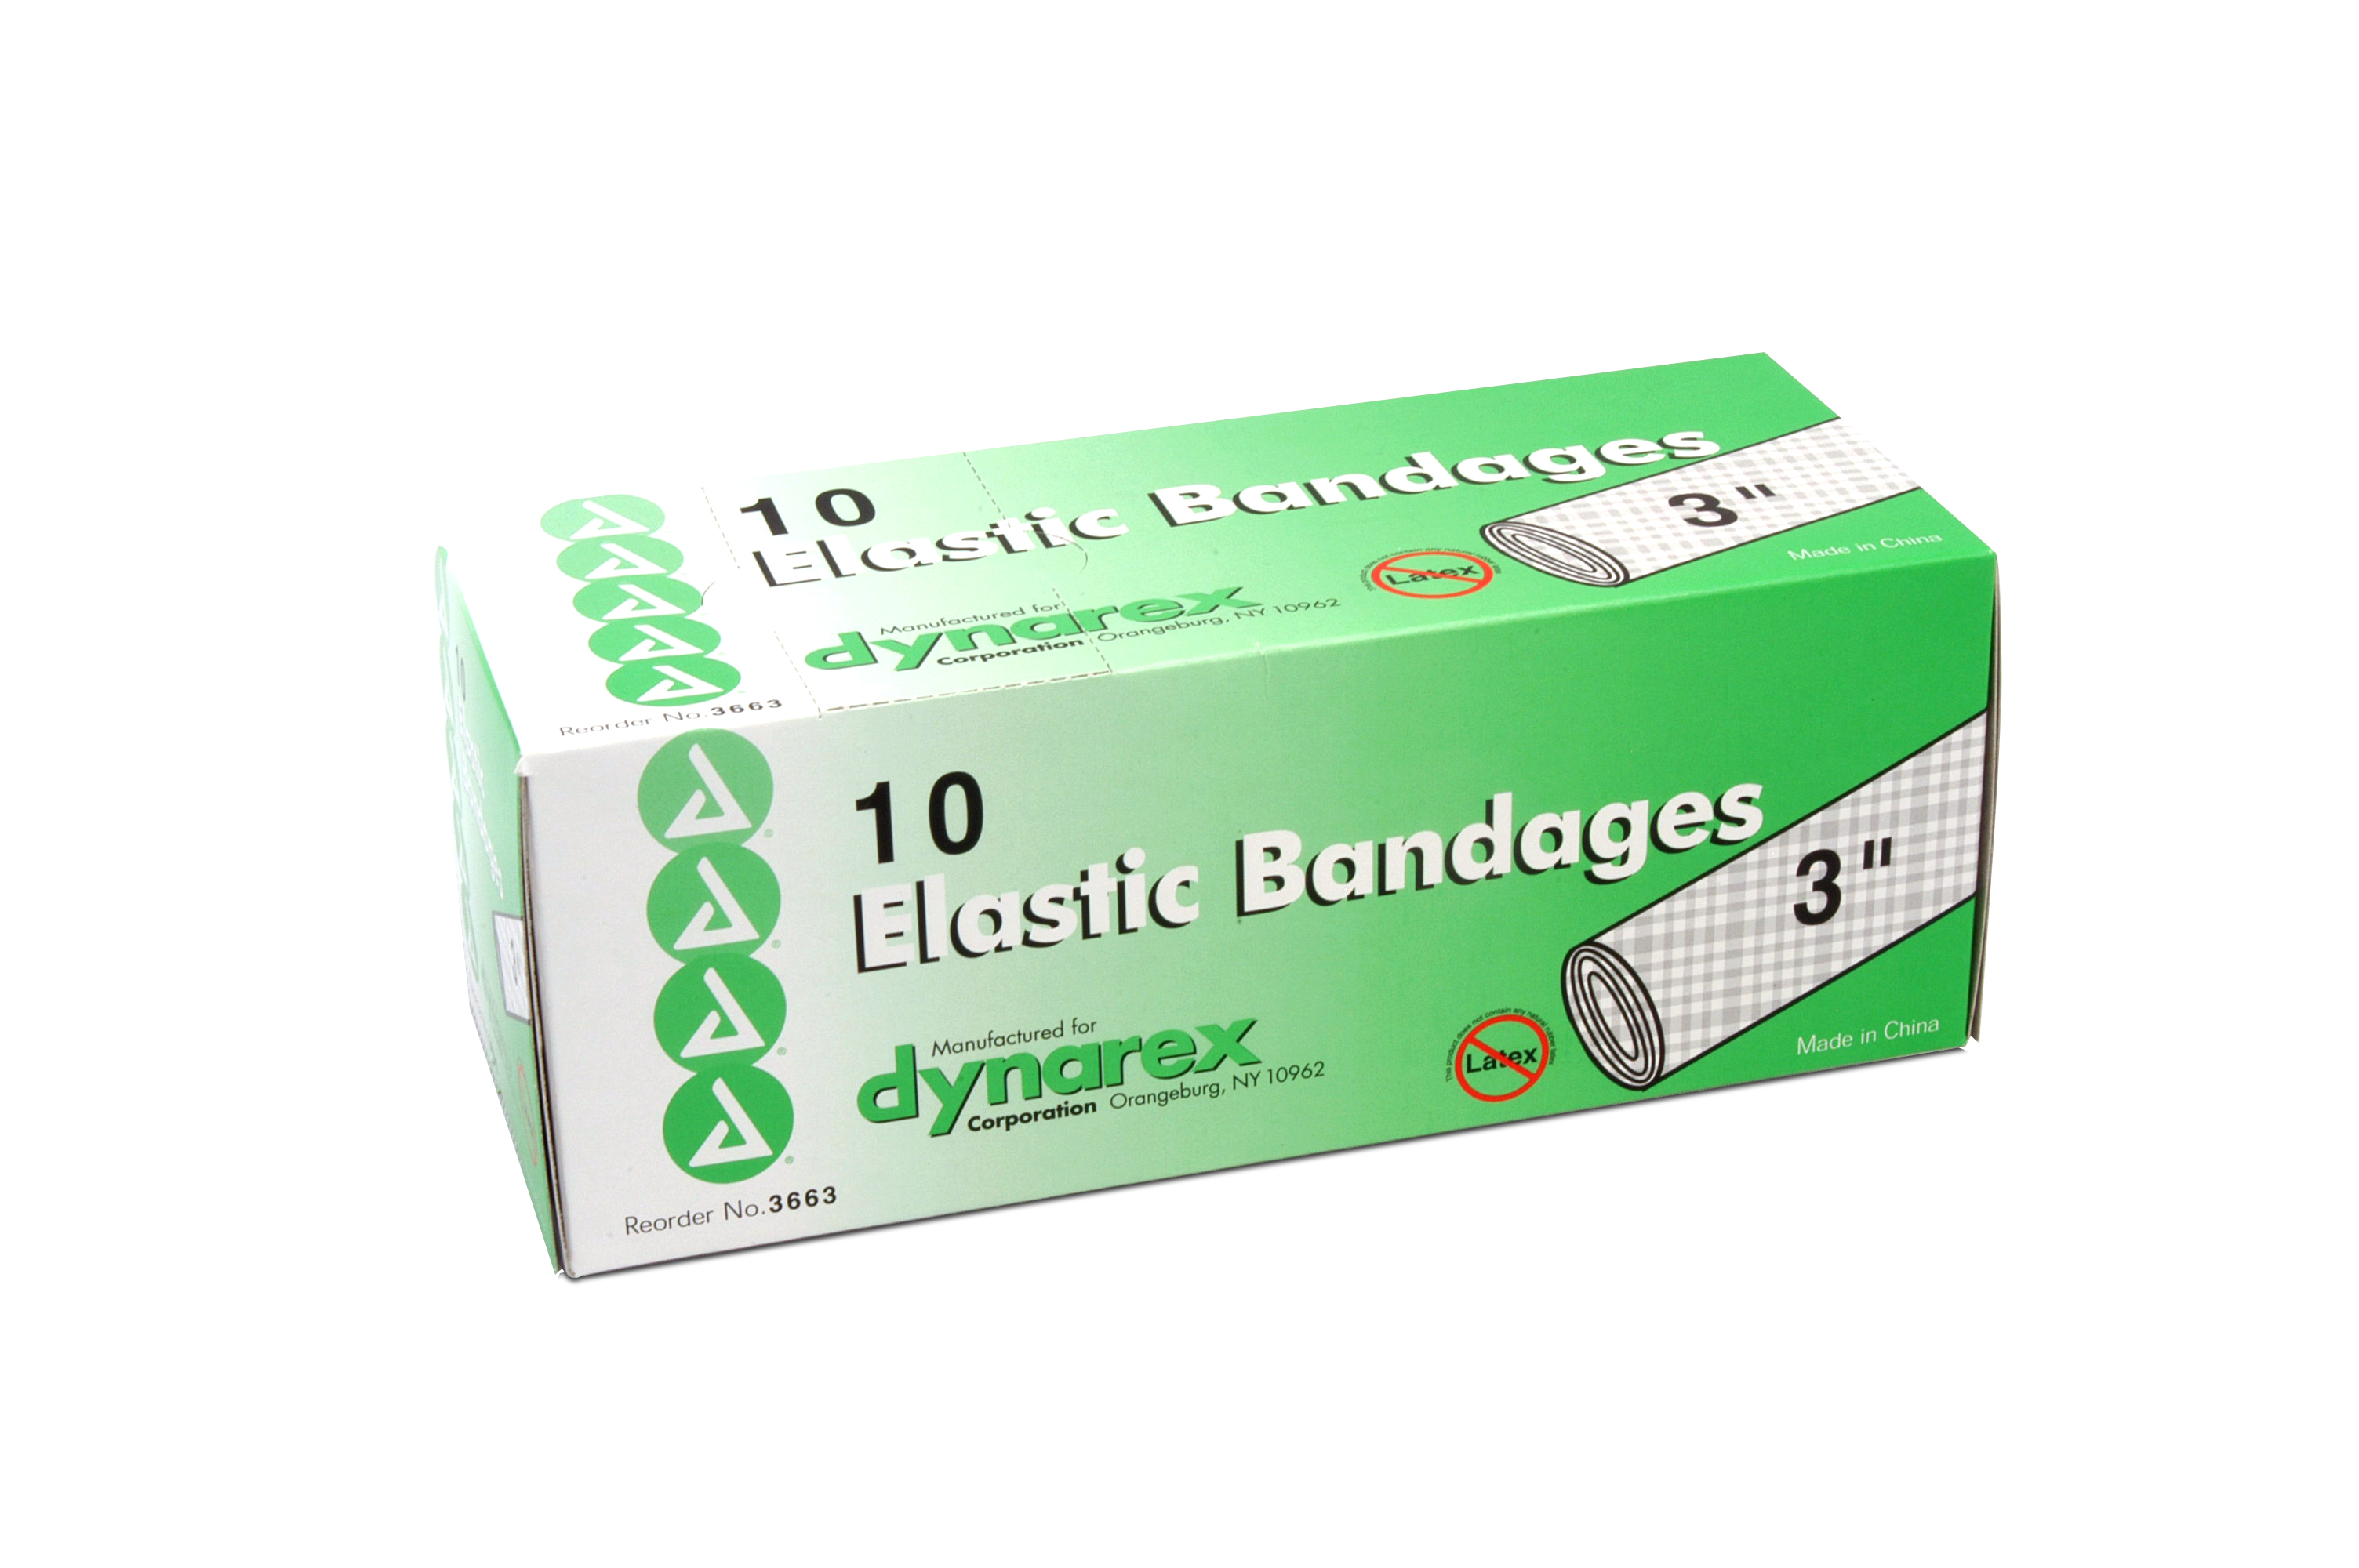 3 Inch Elastic Bandage: Box of 10